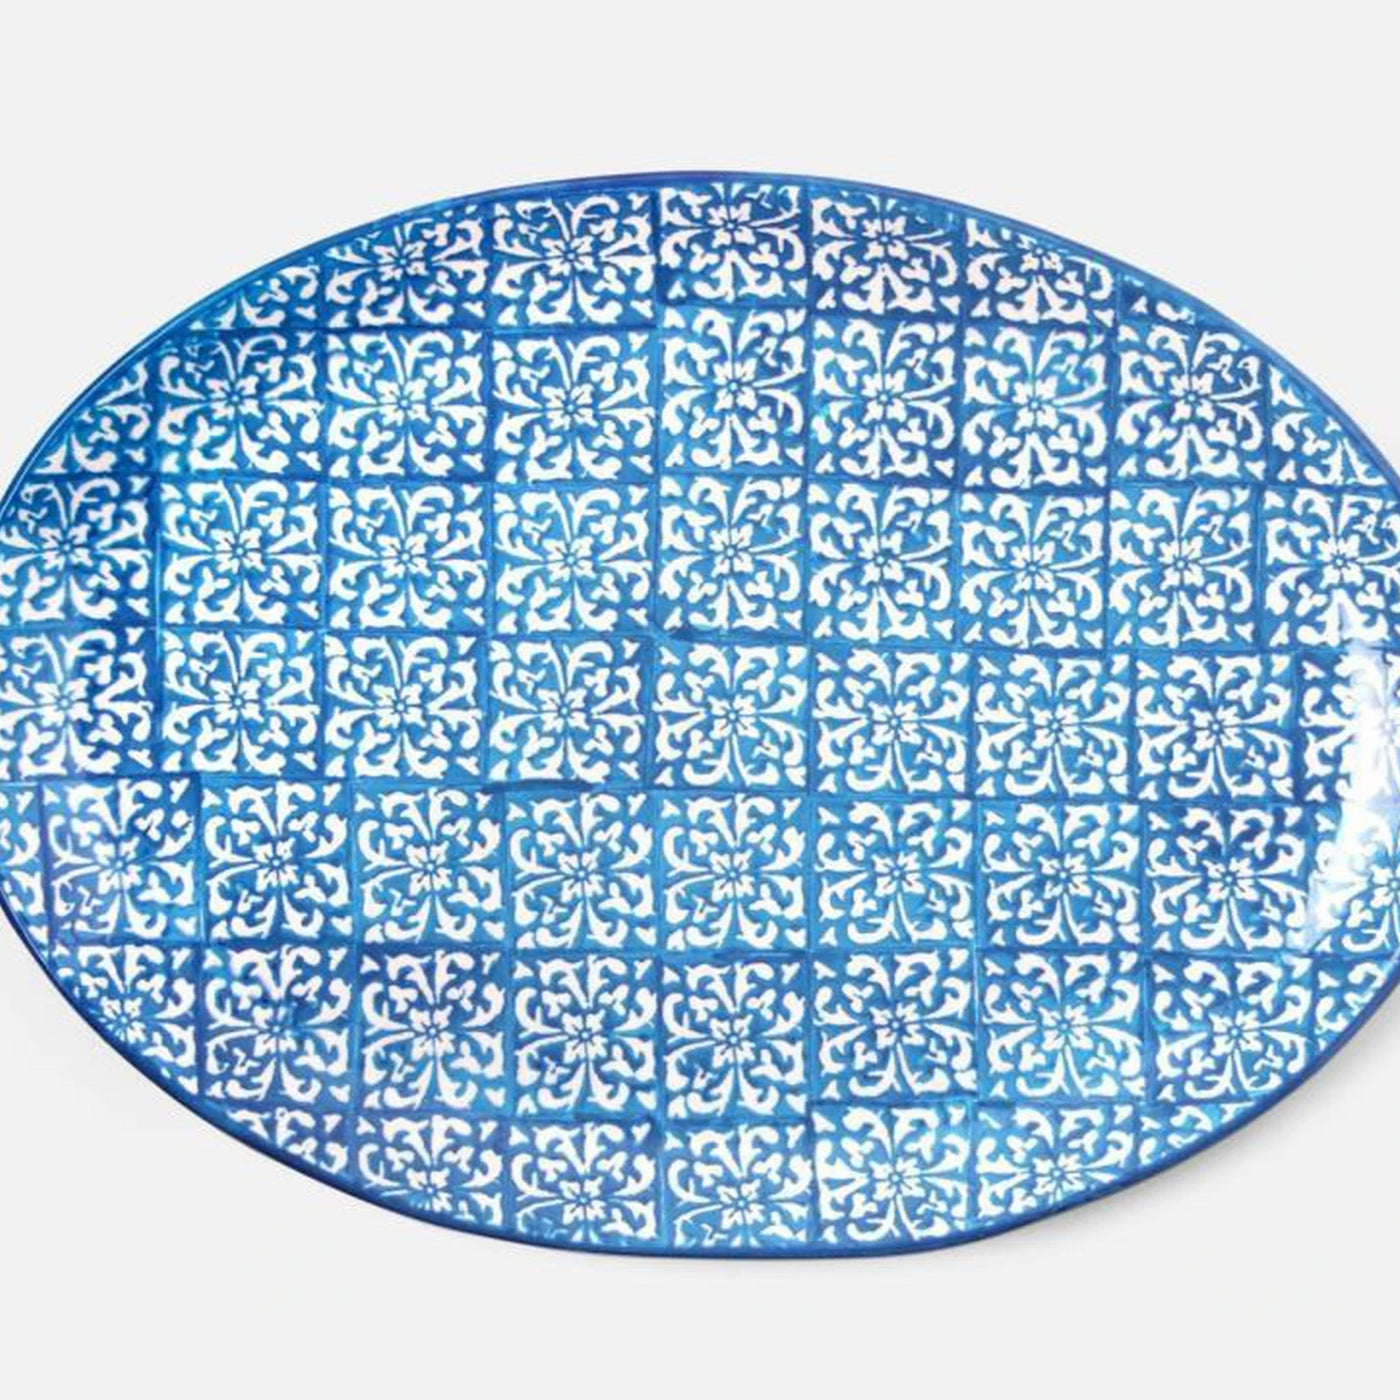 Tiled Blue & White Serving Platter